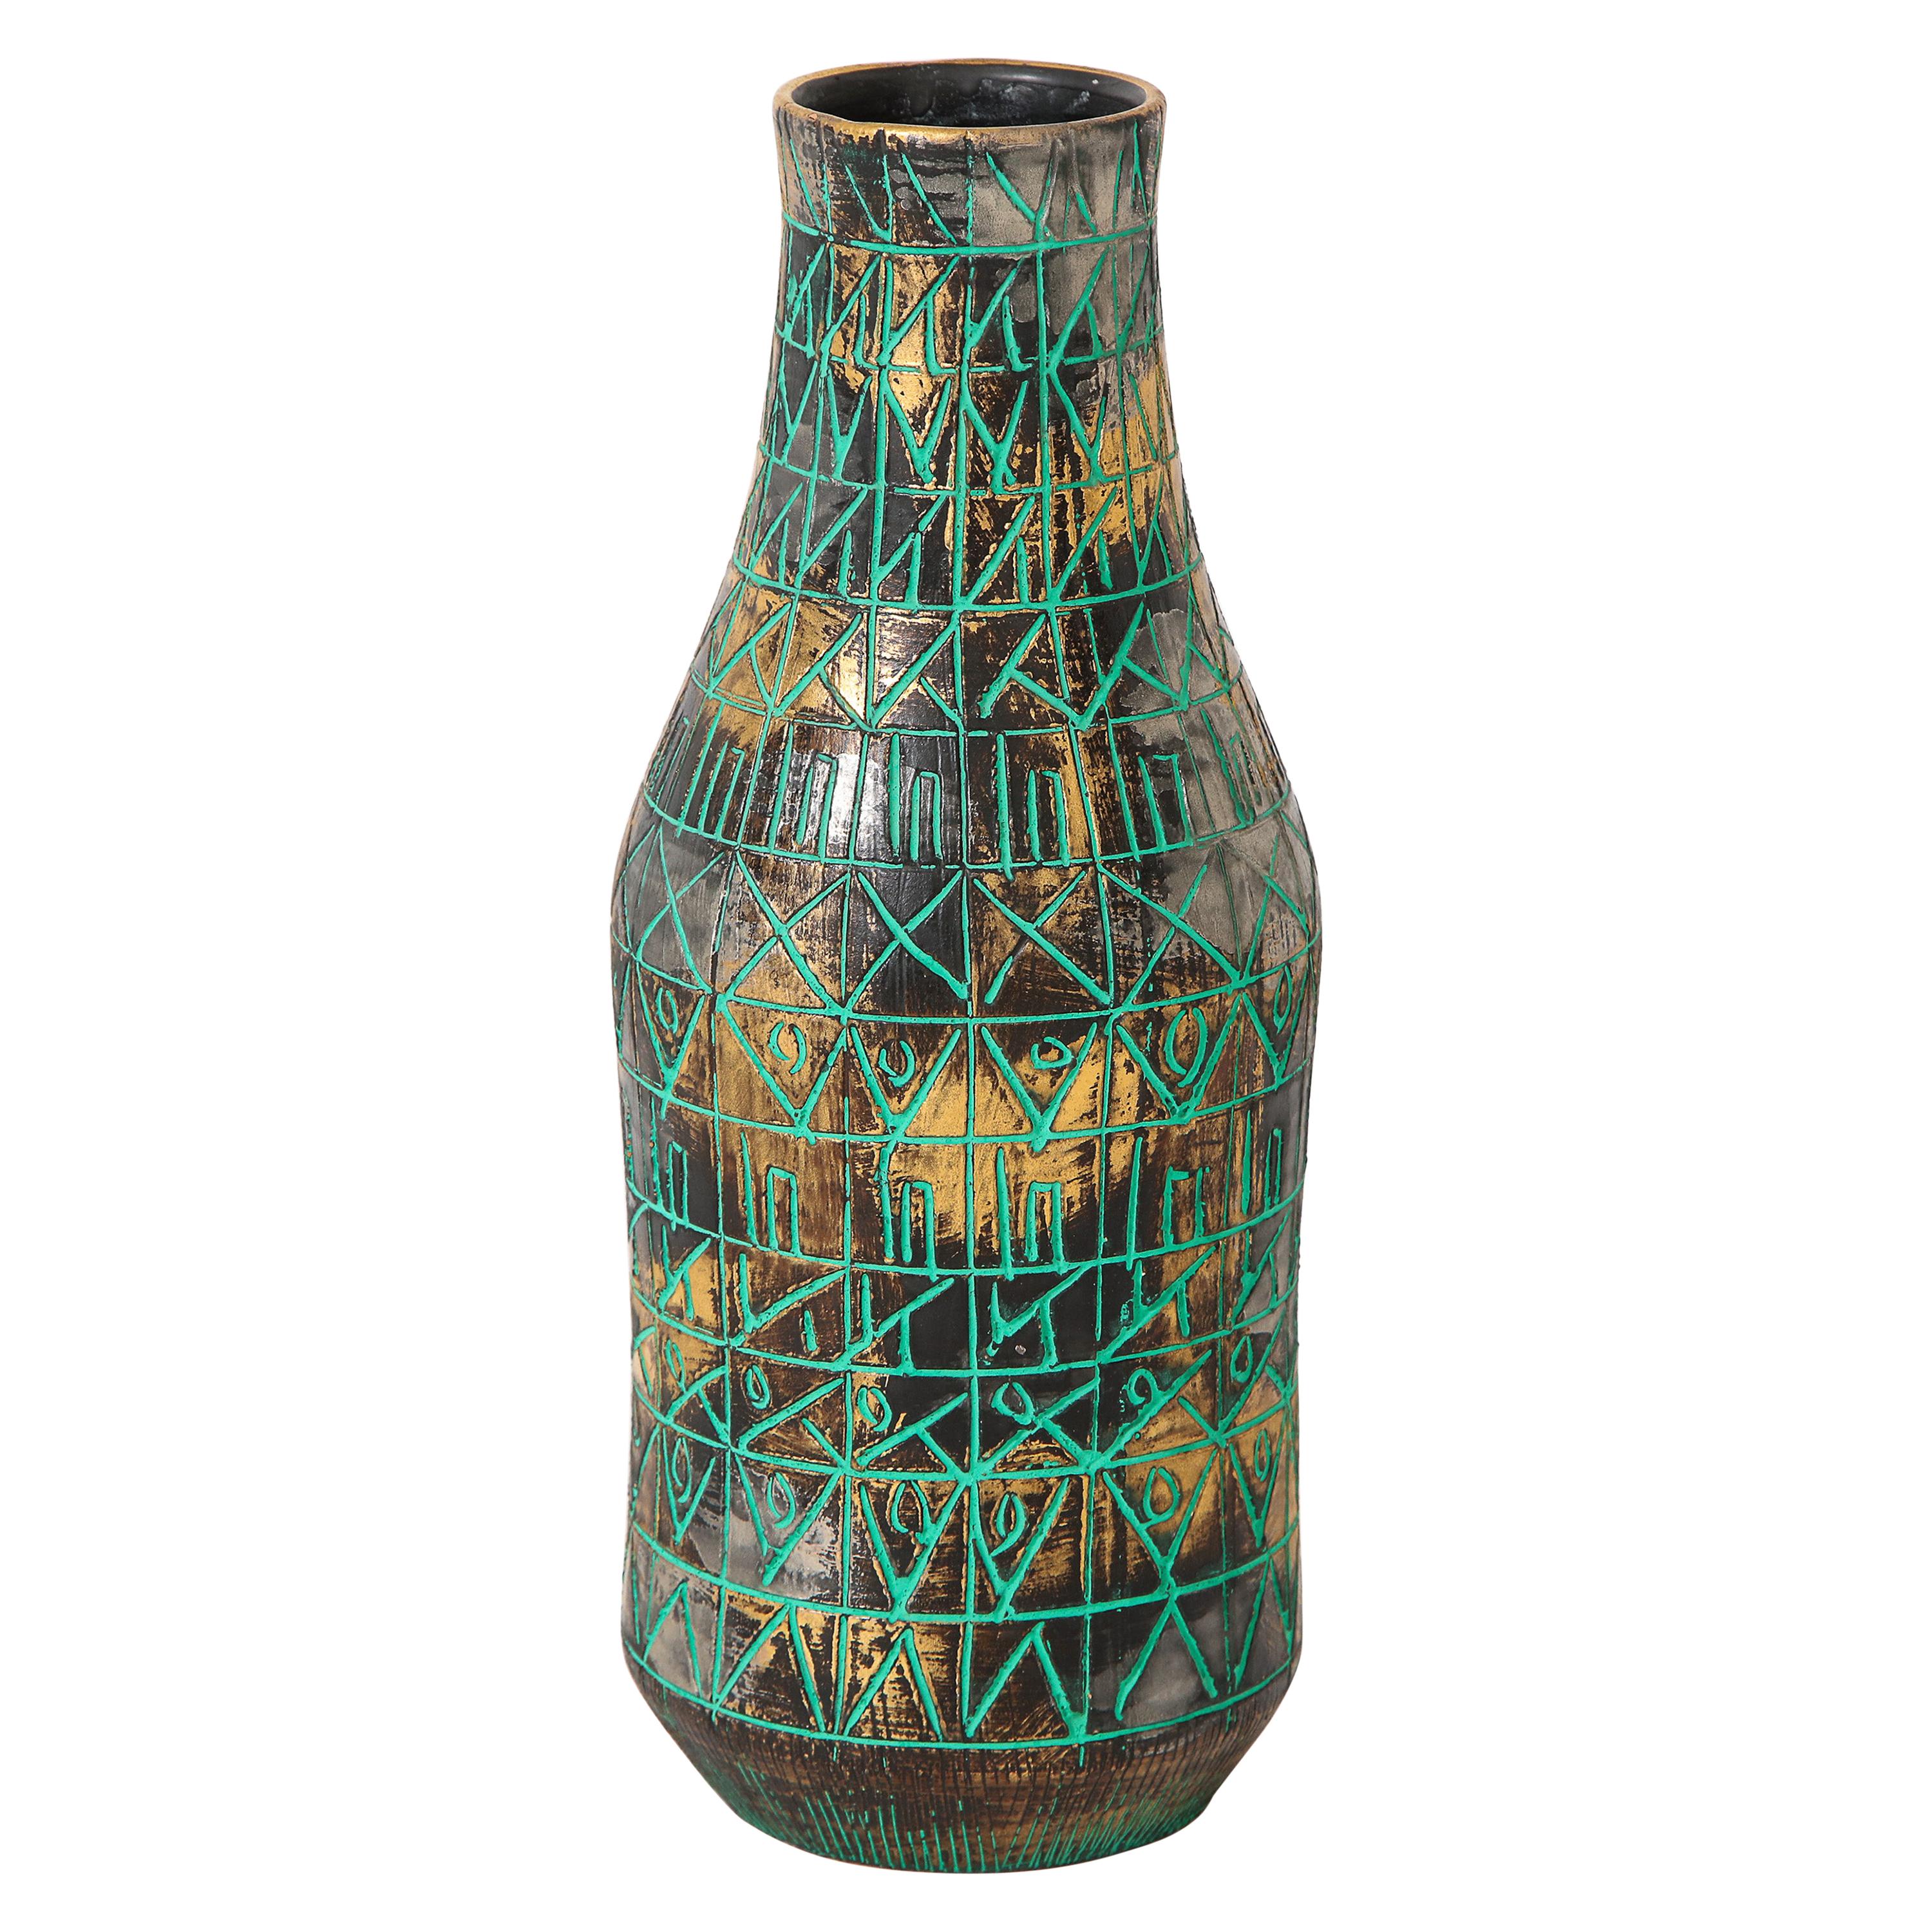 Raymor Vase, Ceramic, Sgraffito, Green, Gold, Chrome, Signed For Sale